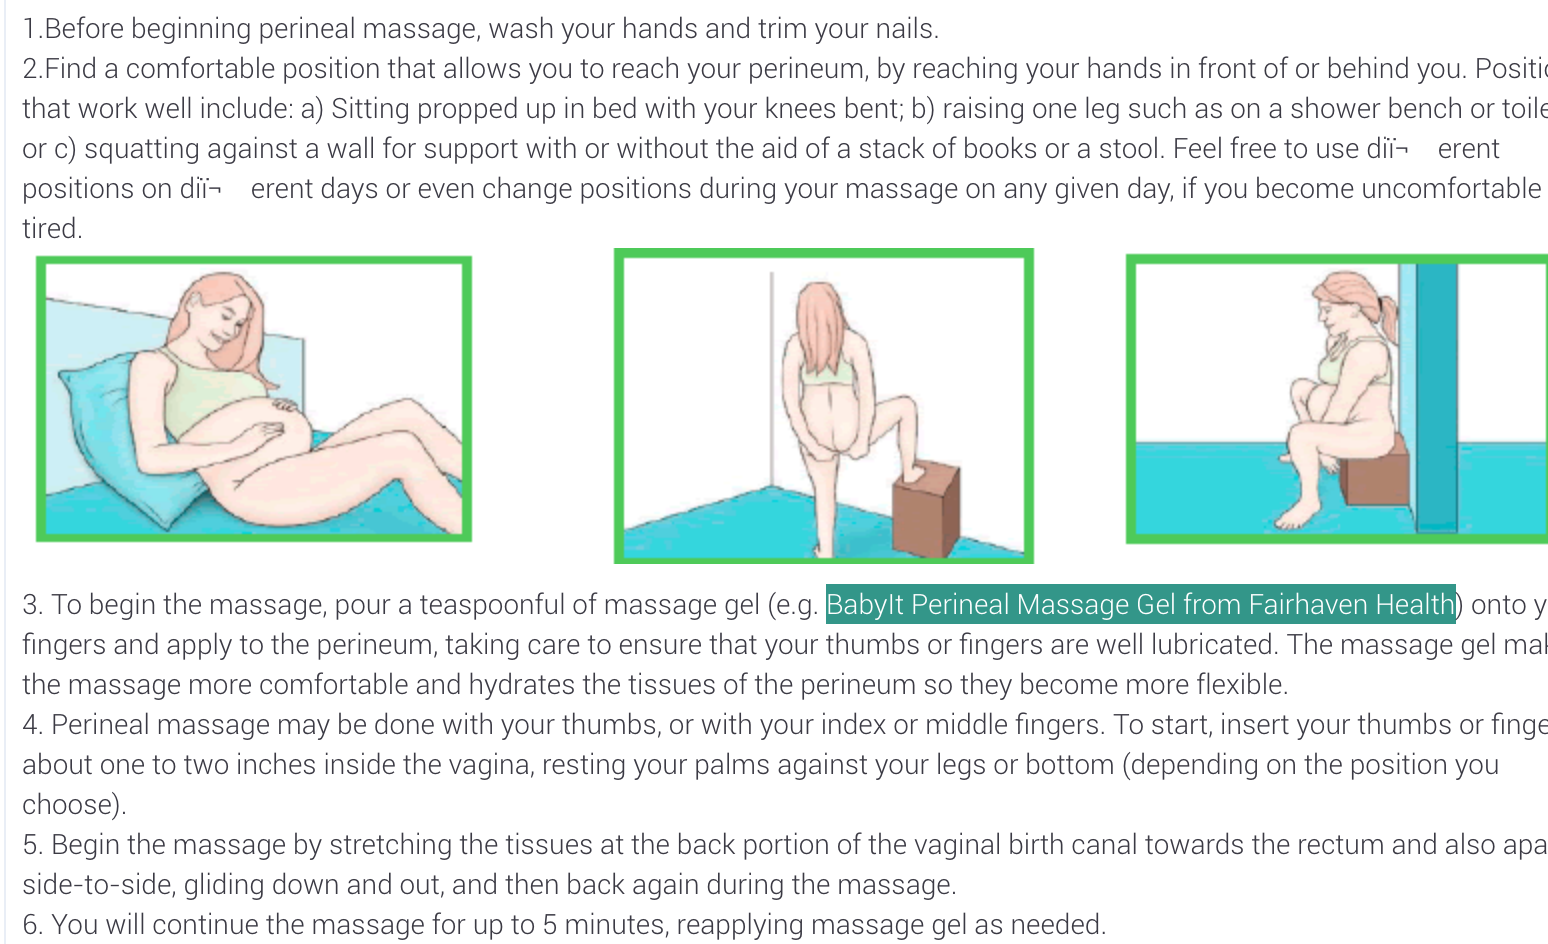 Como hacer masaje perineal